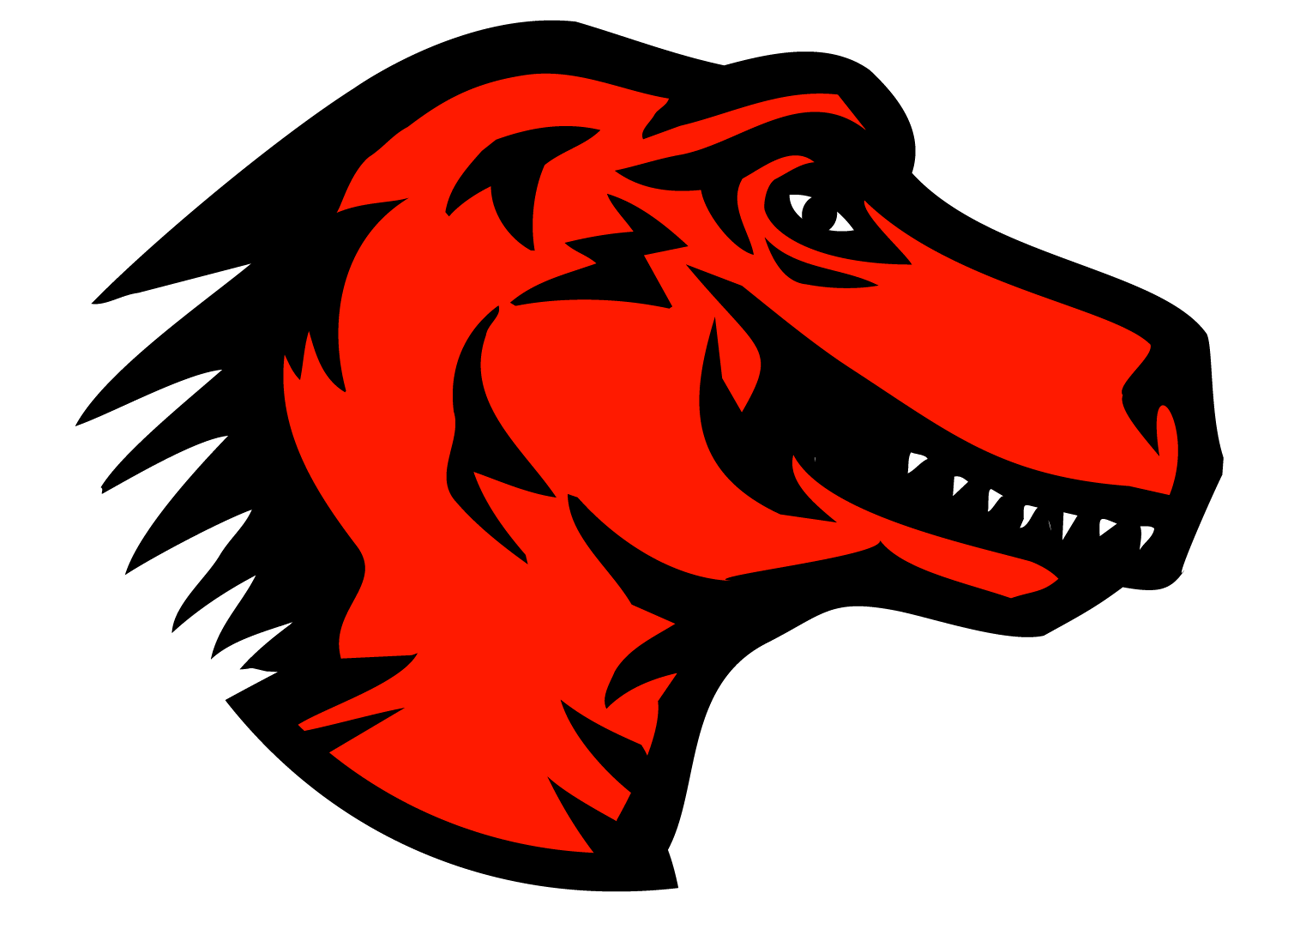 Dino Logo - File:Mozilla dinosaur head logo.png - Wikimedia Commons